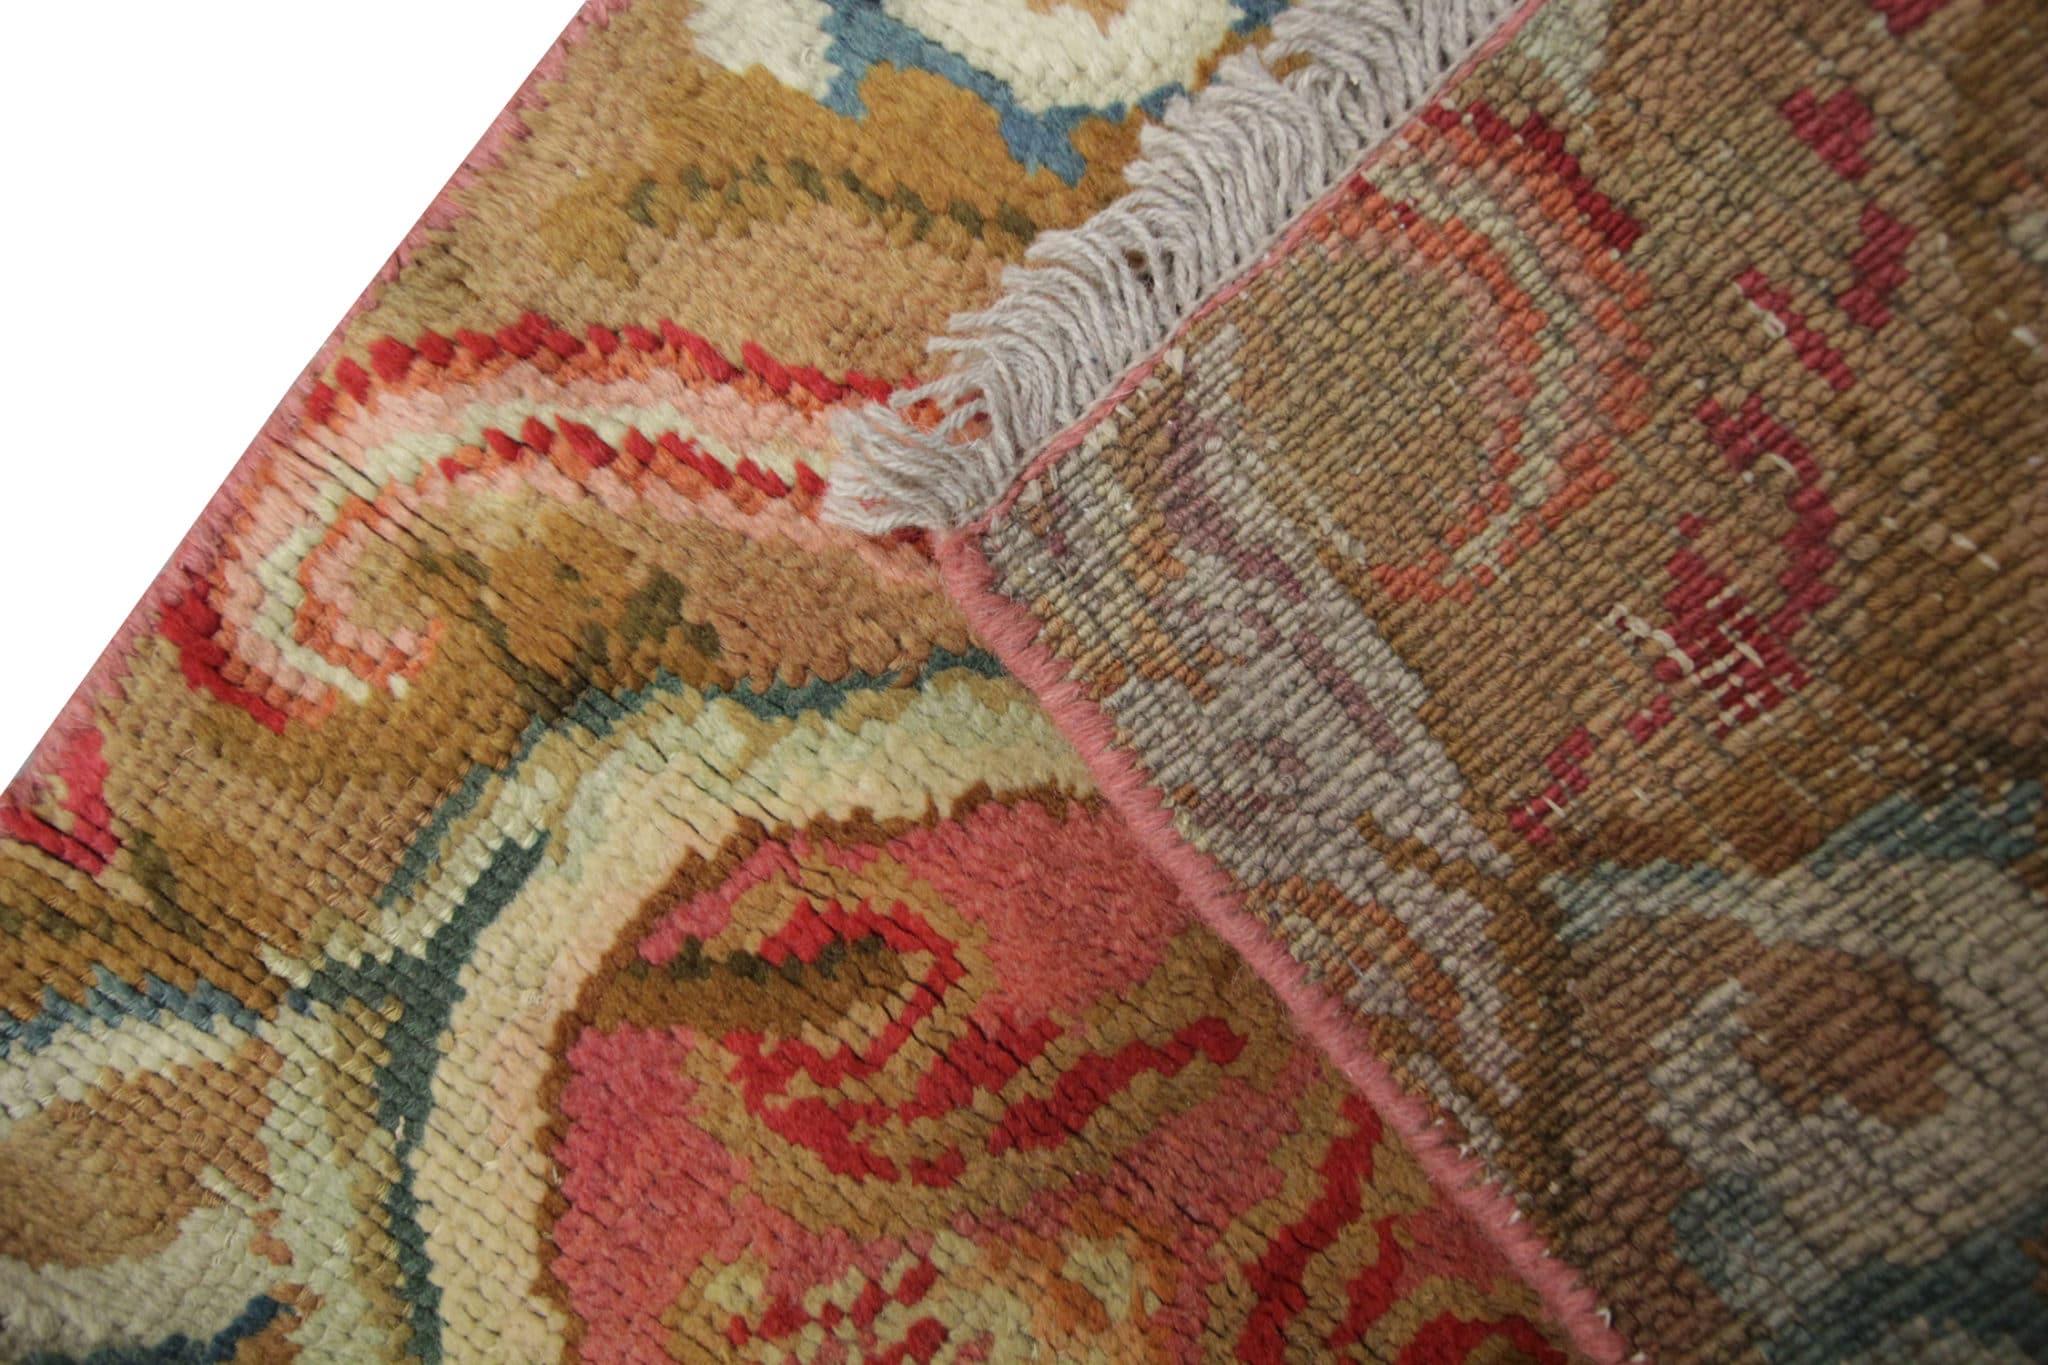 Treten Sie ein in die reiche Geschichte britischer Handwerkskunst mit unserem seltenen antiken Teppich English Axminster handgefertigten Läufer. Dieses exquisite Stück aus den 1870er Jahren ist das Erbe der traditionellen englischen